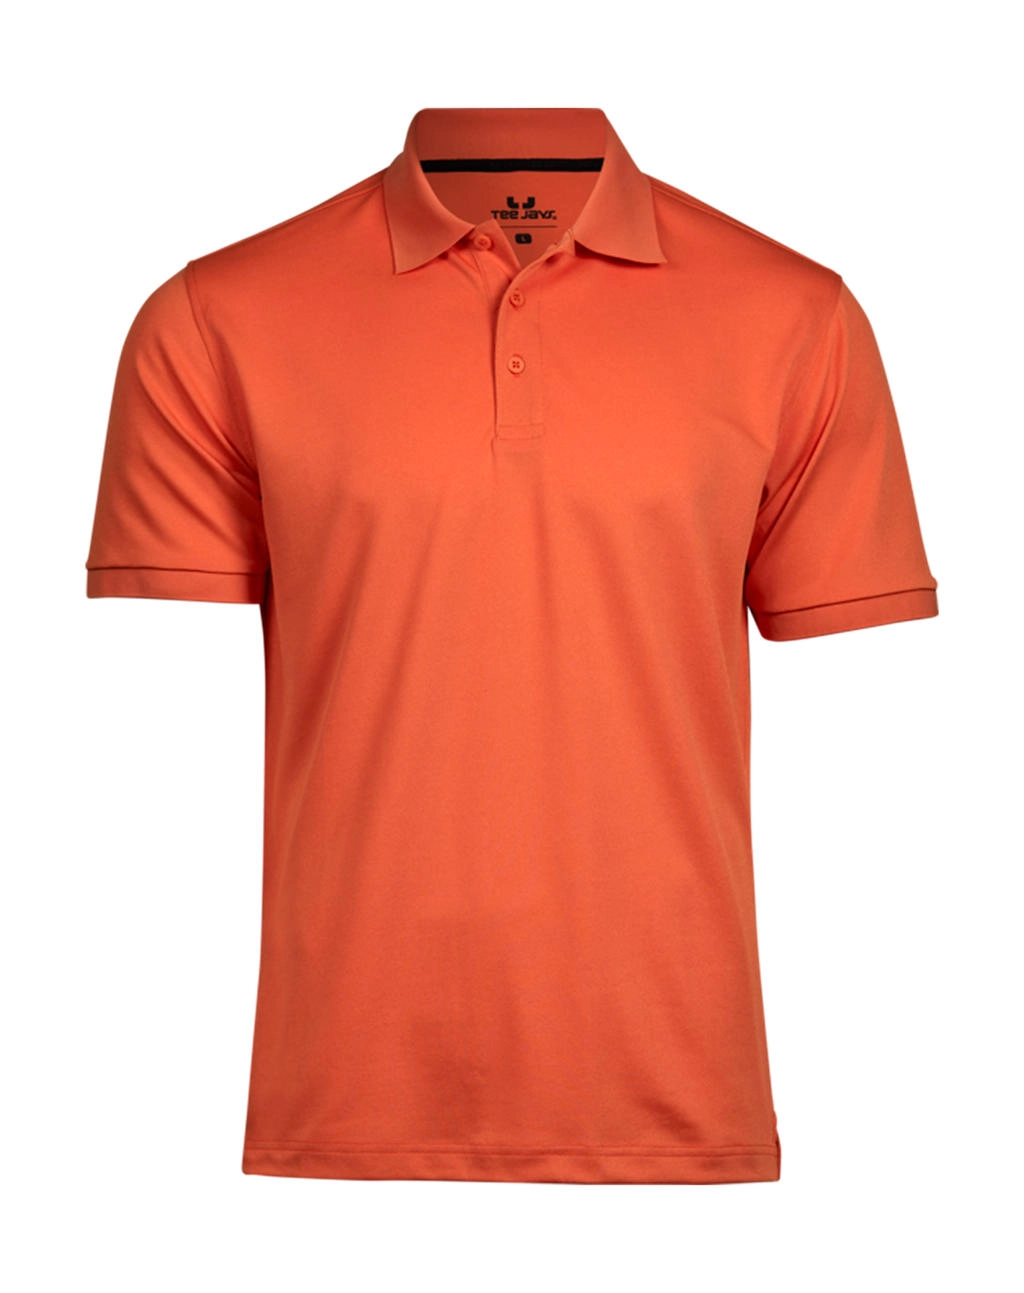 Club Polo zum Besticken und Bedrucken in der Farbe Dusty Orange mit Ihren Logo, Schriftzug oder Motiv.